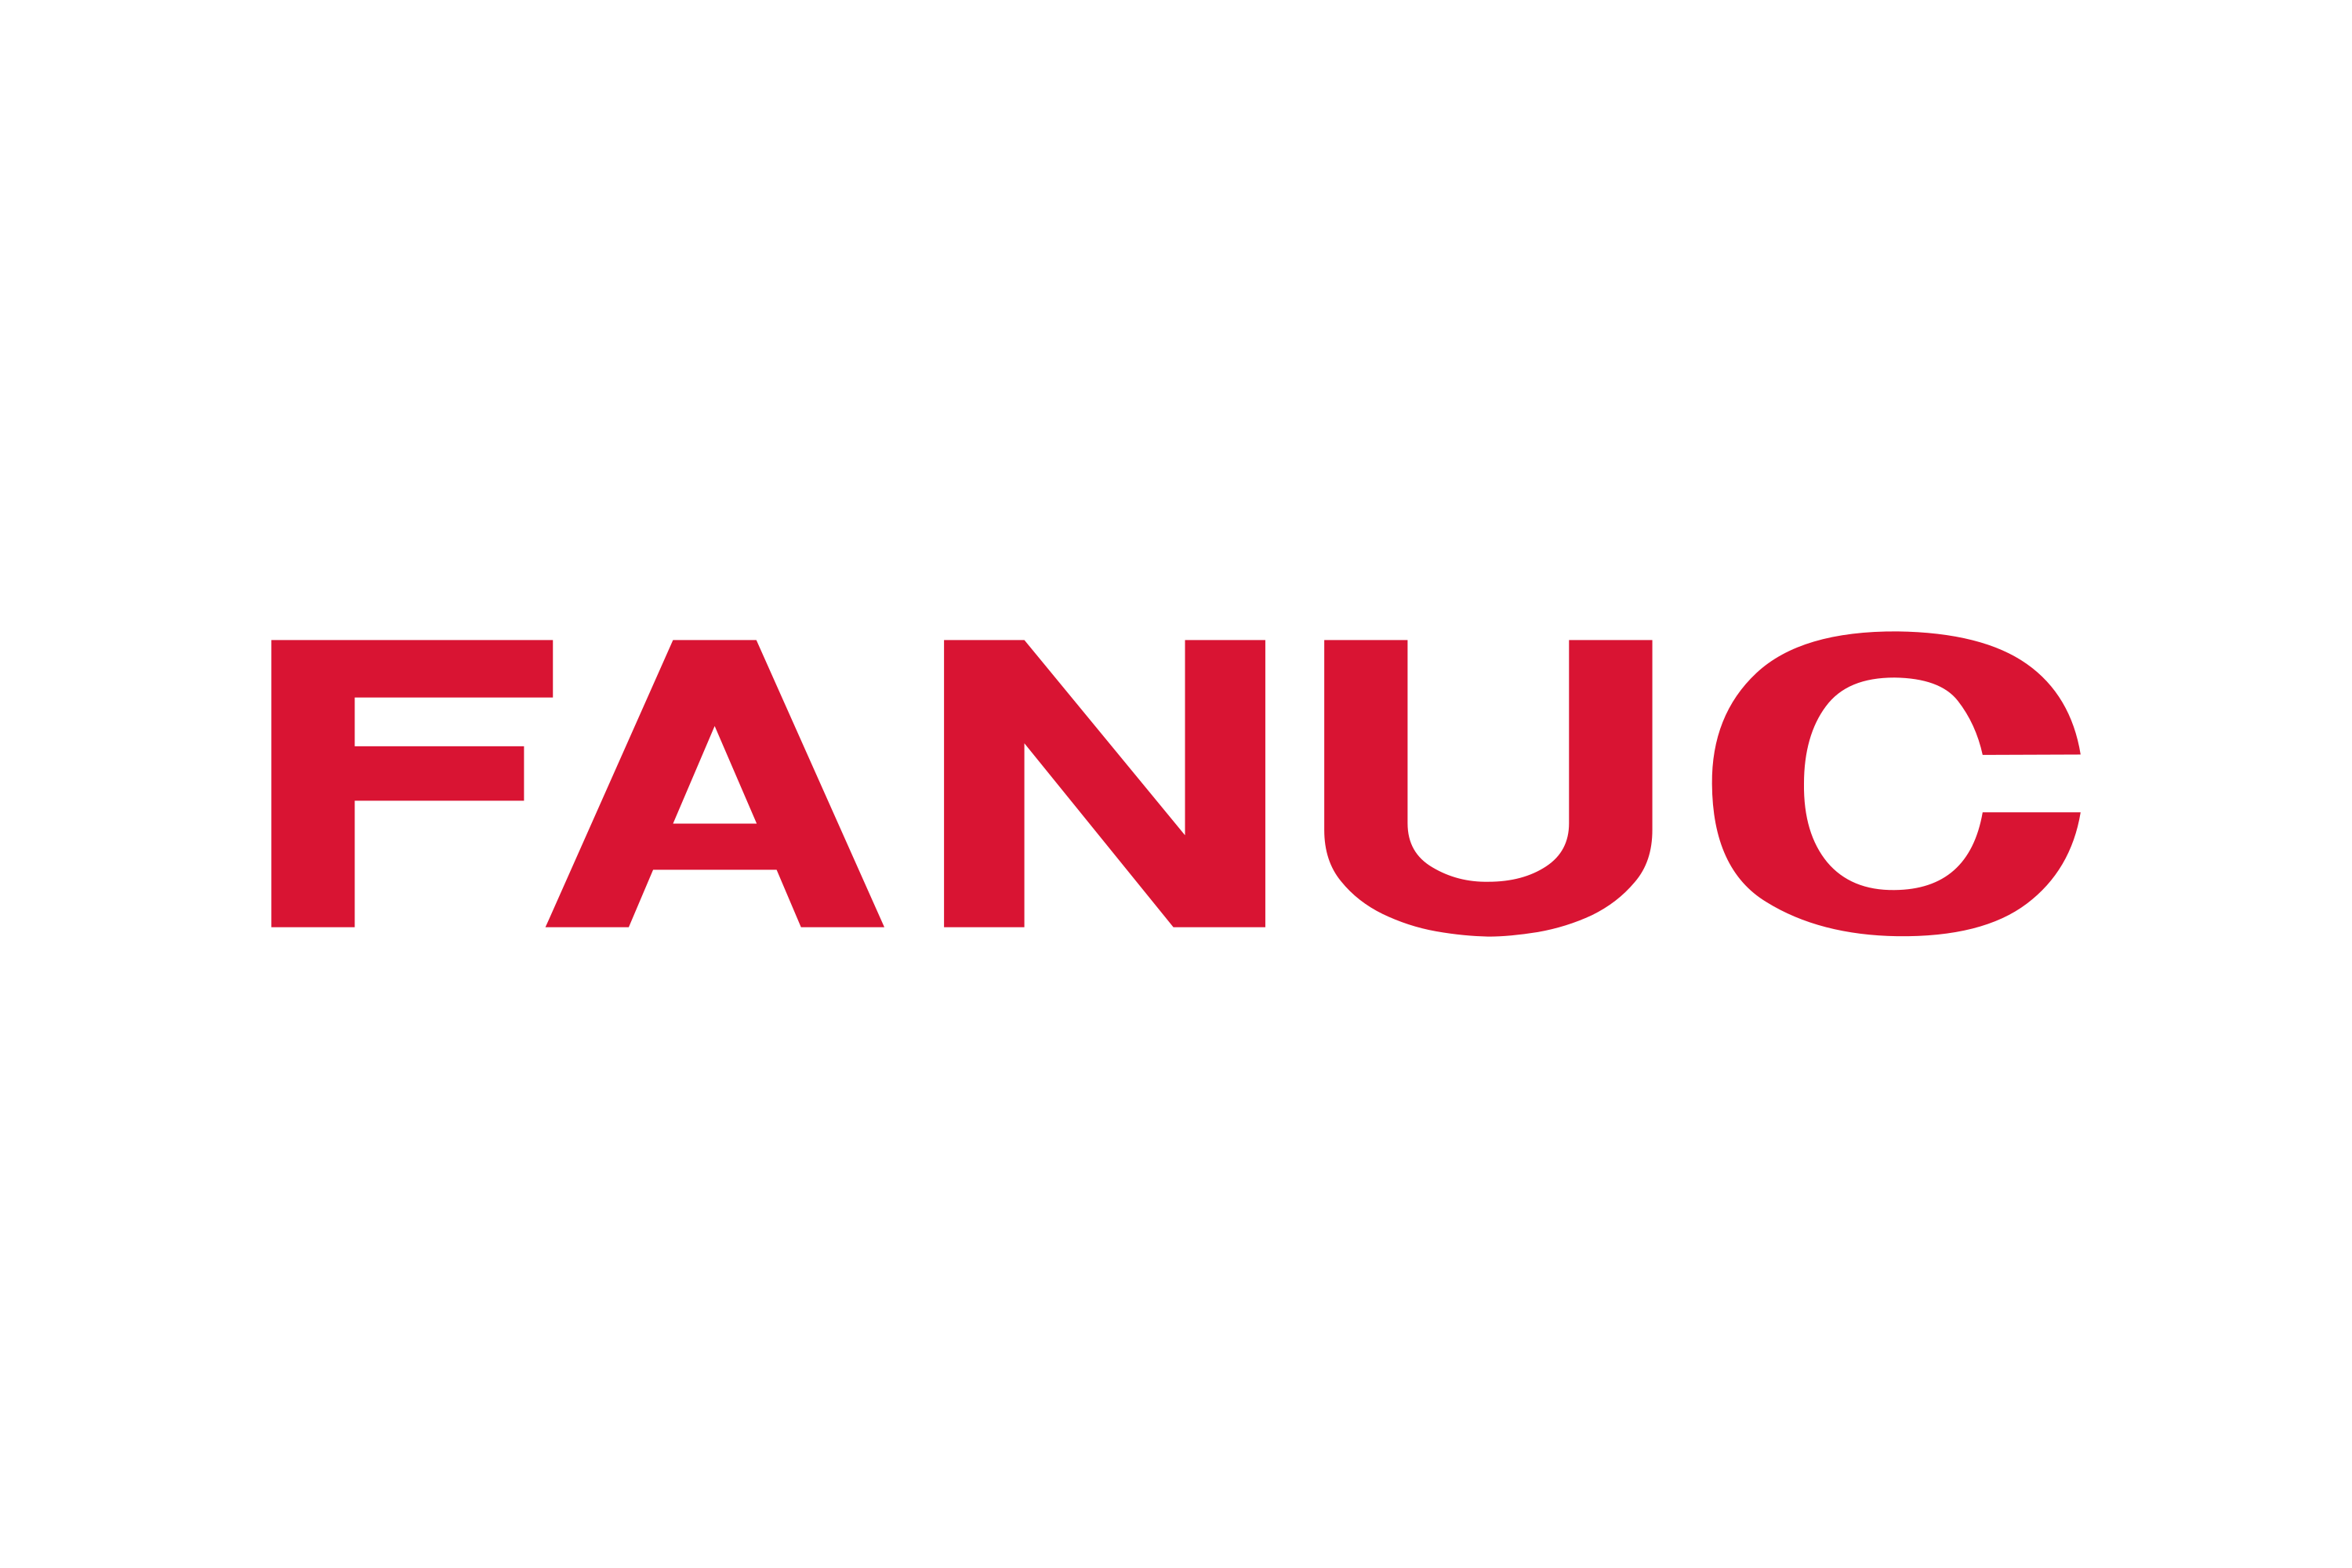 Download FANUC Logo in SVG Vector or PNG File Format - Logo.wine